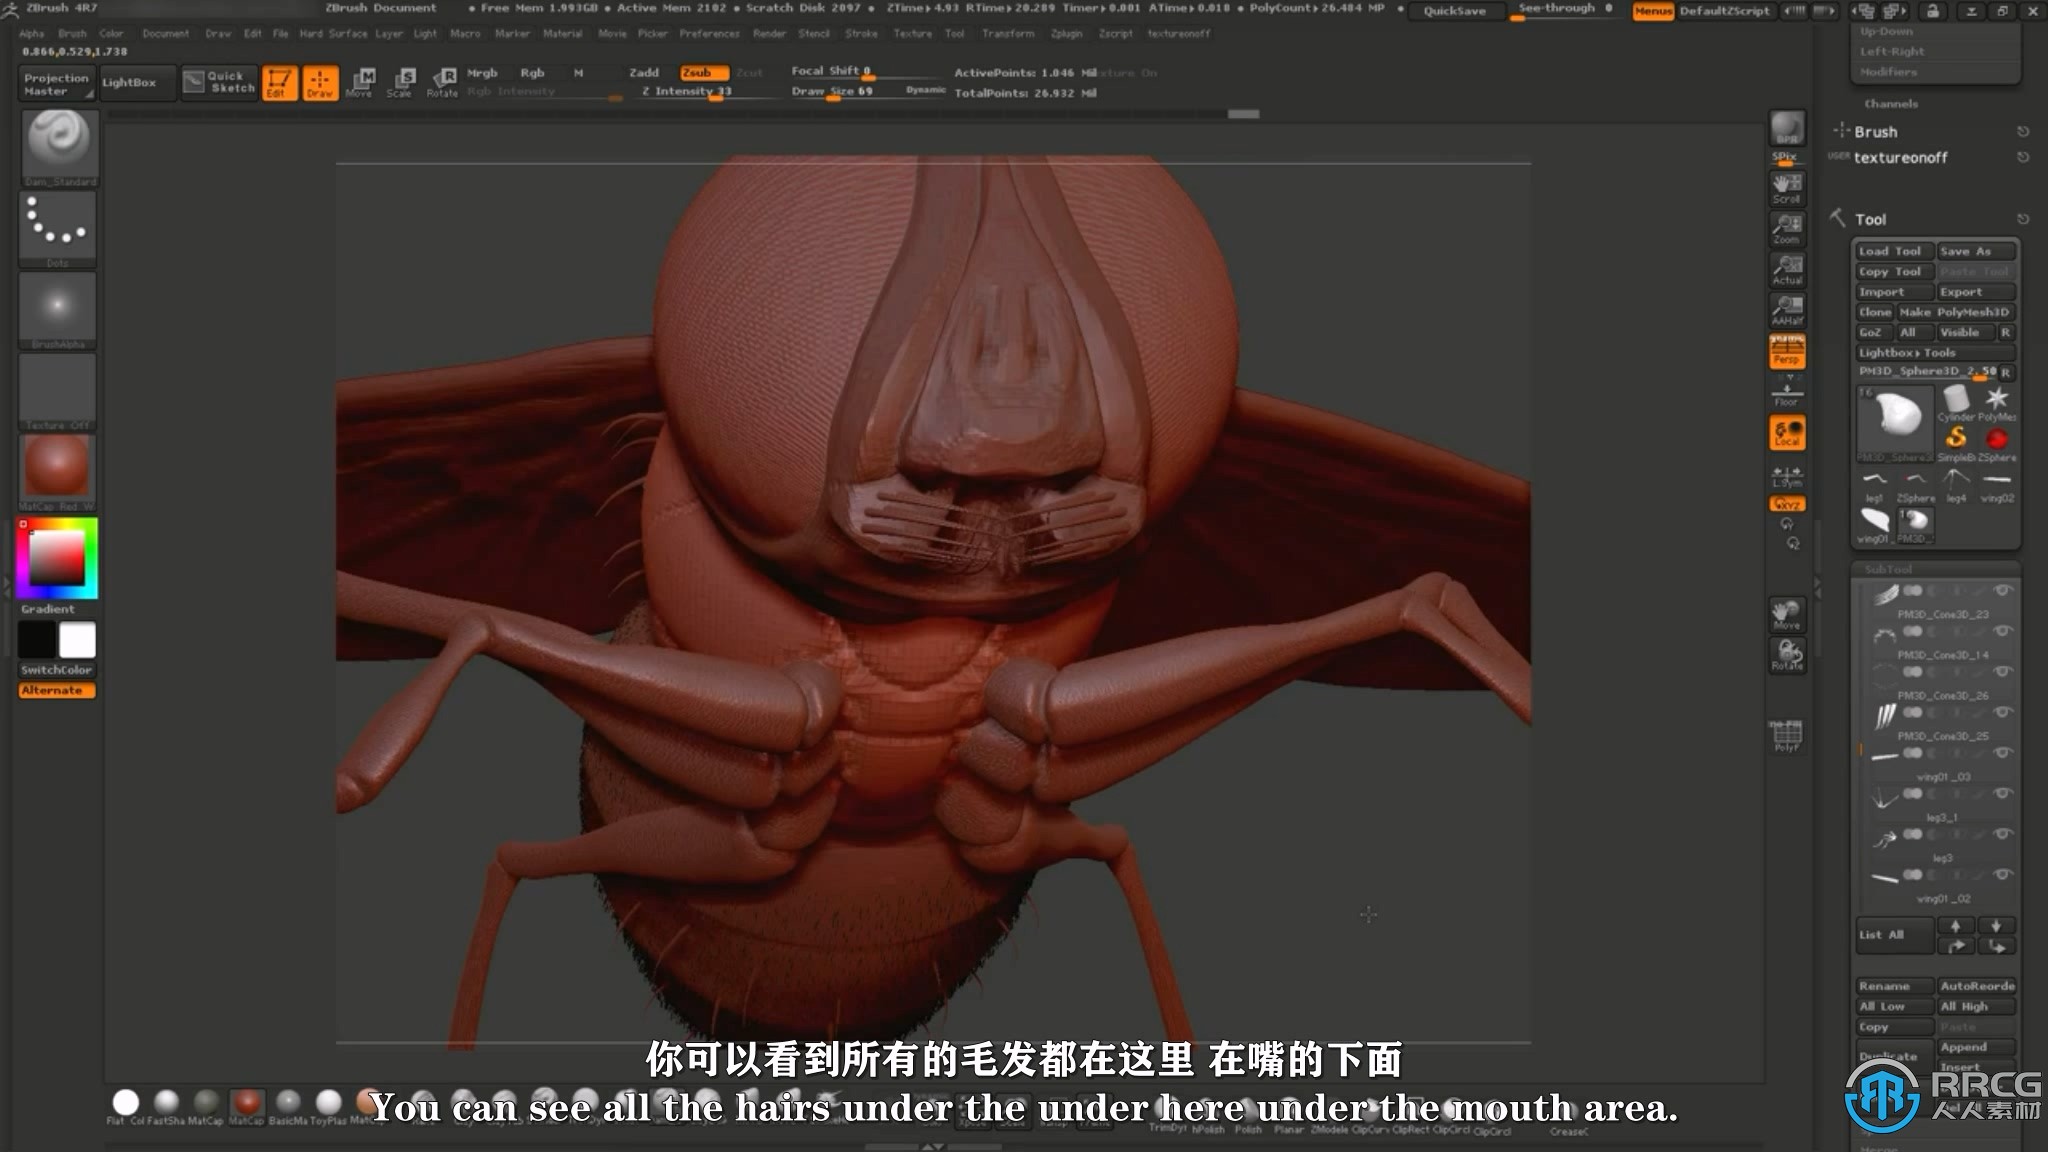 【中文字幕】Zbrush逼真苍蝇雕刻建模实例制作视频教程